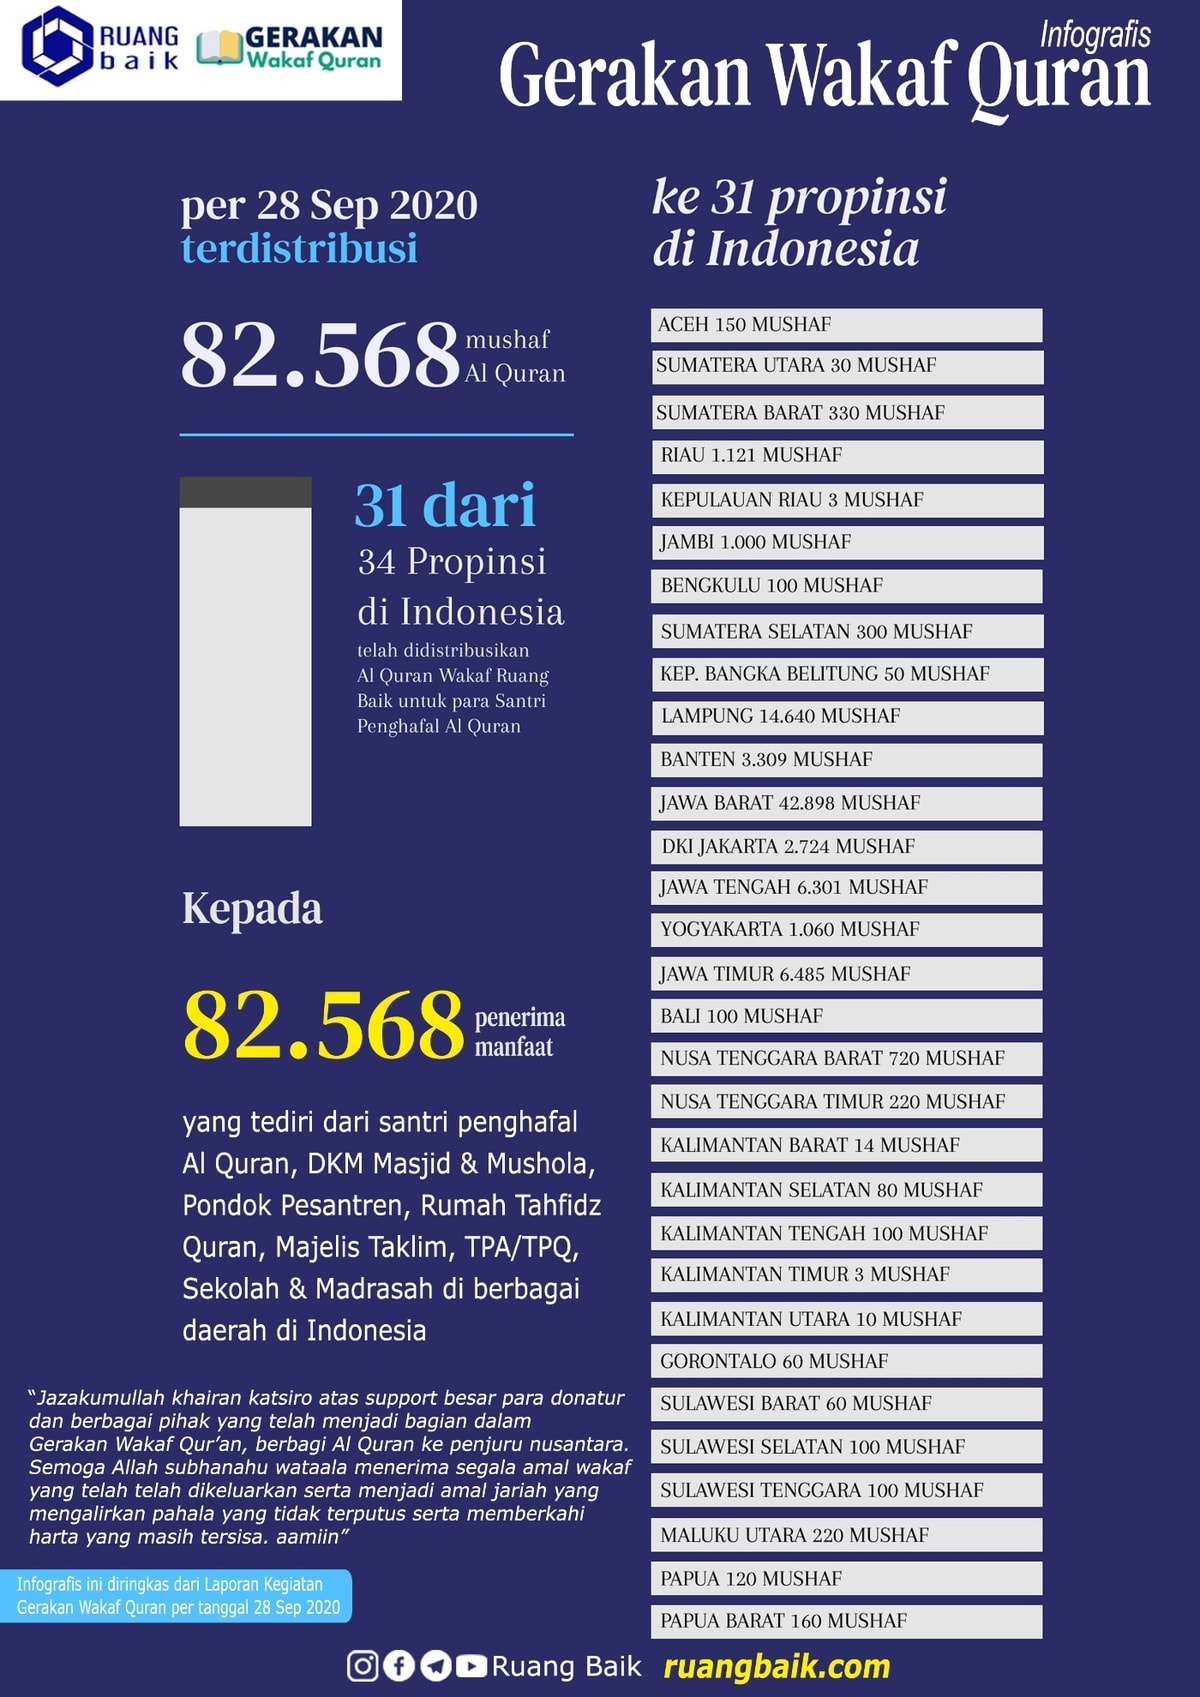 Infografis Penyaluran Al Quran Wakaf Berdasarkan Propinsi